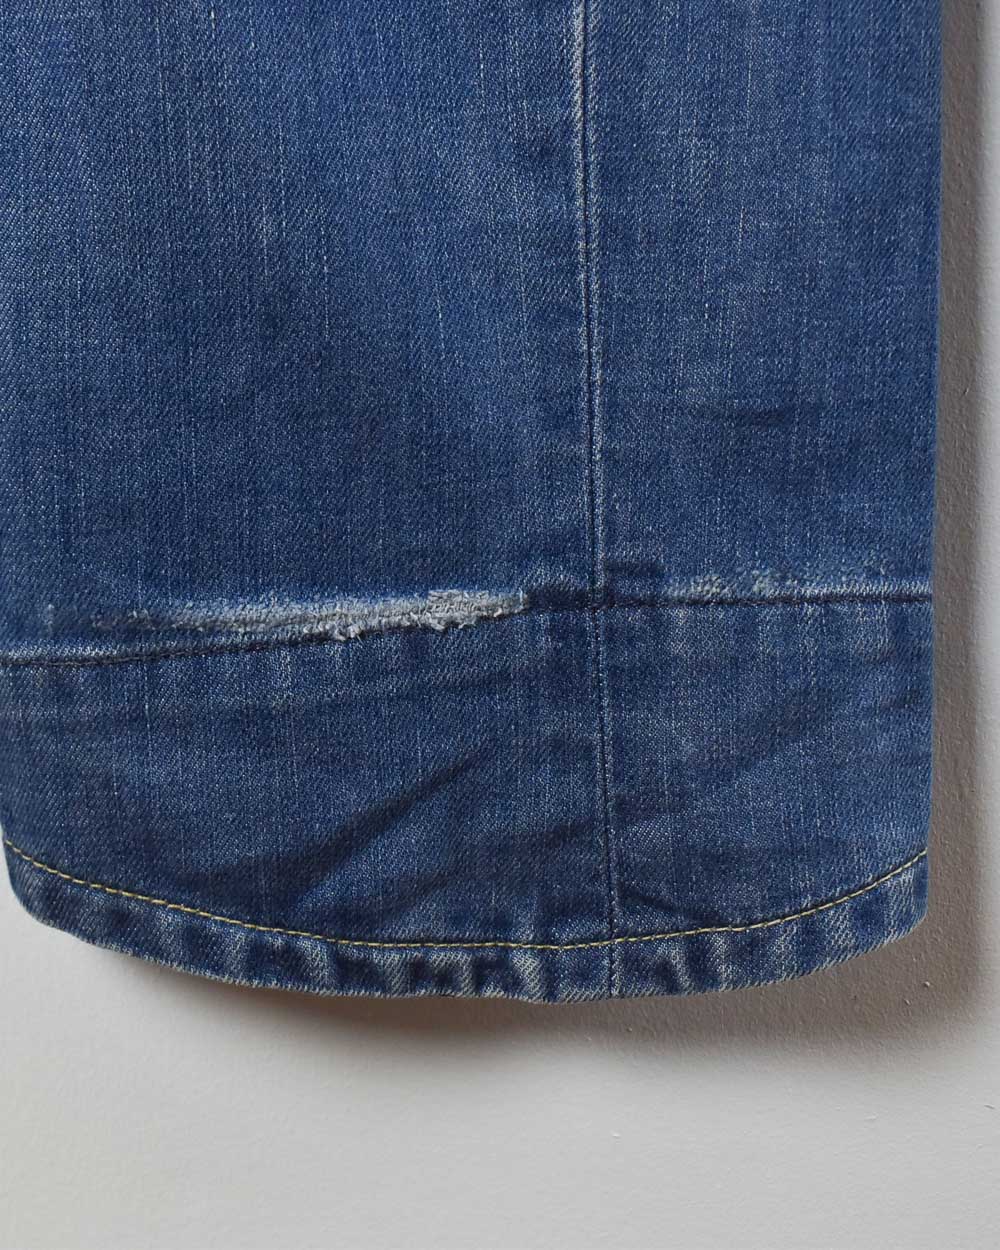 Blue Levi's Jeans - W32 L36